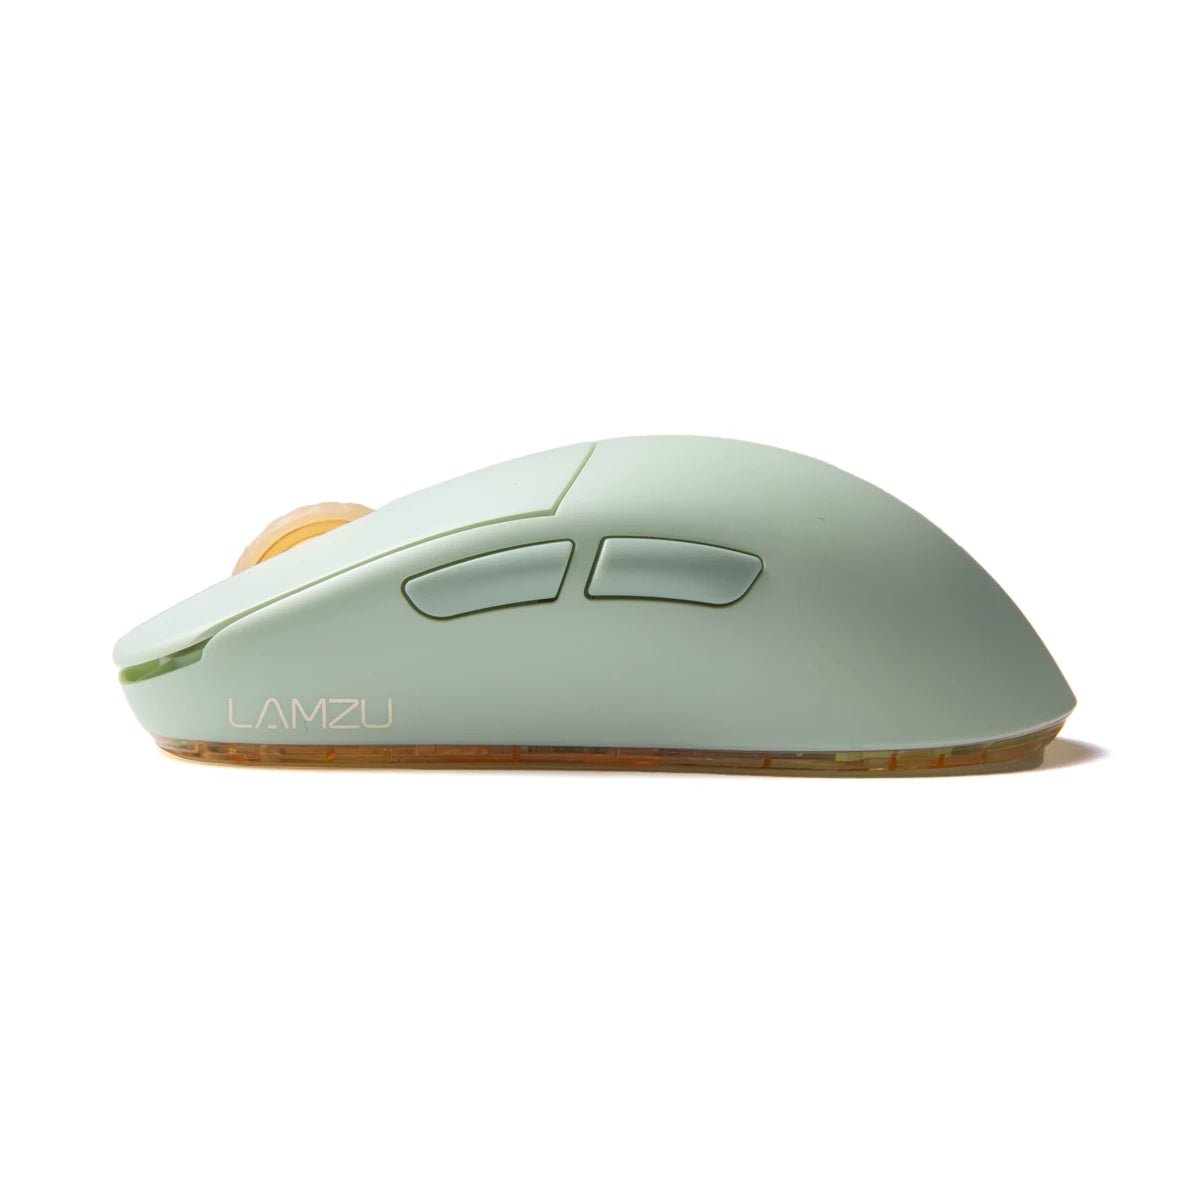 Lamzu Atlantis Mini Pro Superlight Gaming Mouse – Divinikey